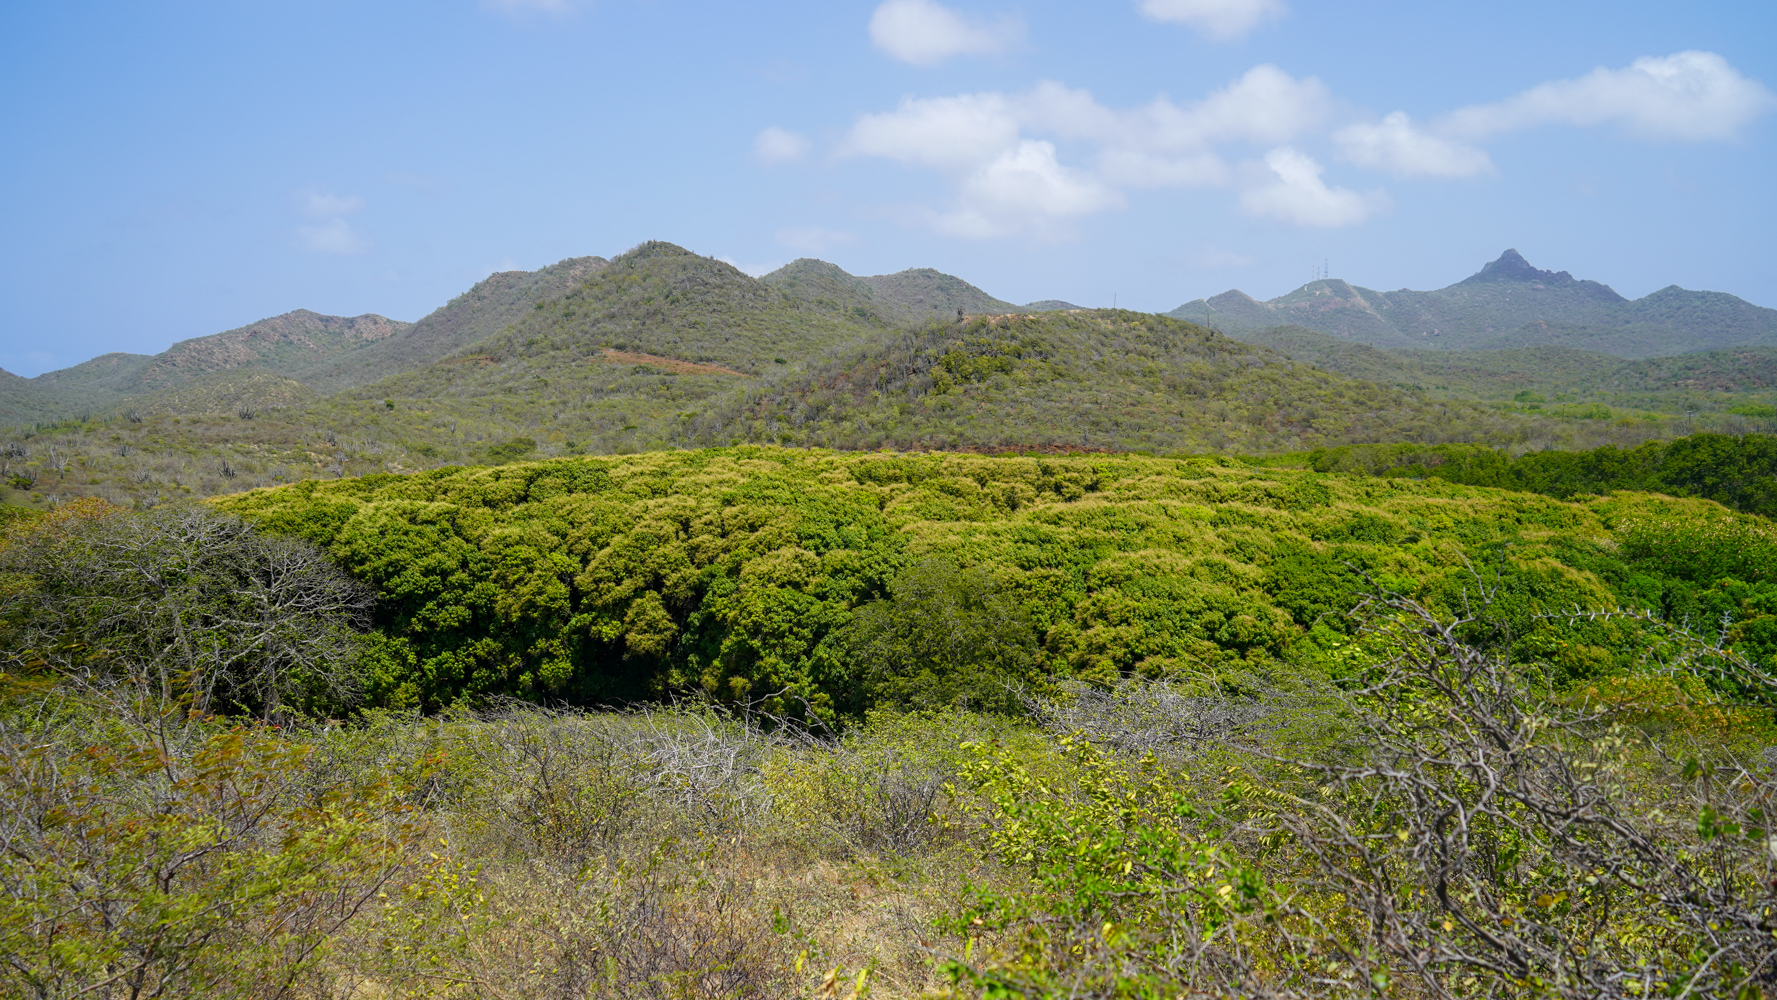 Vanaf het uitzichtpunt kun je goed zien hoe de mangobomen groeien. Ze groeien steeds hoger om maar licht te krijgen.